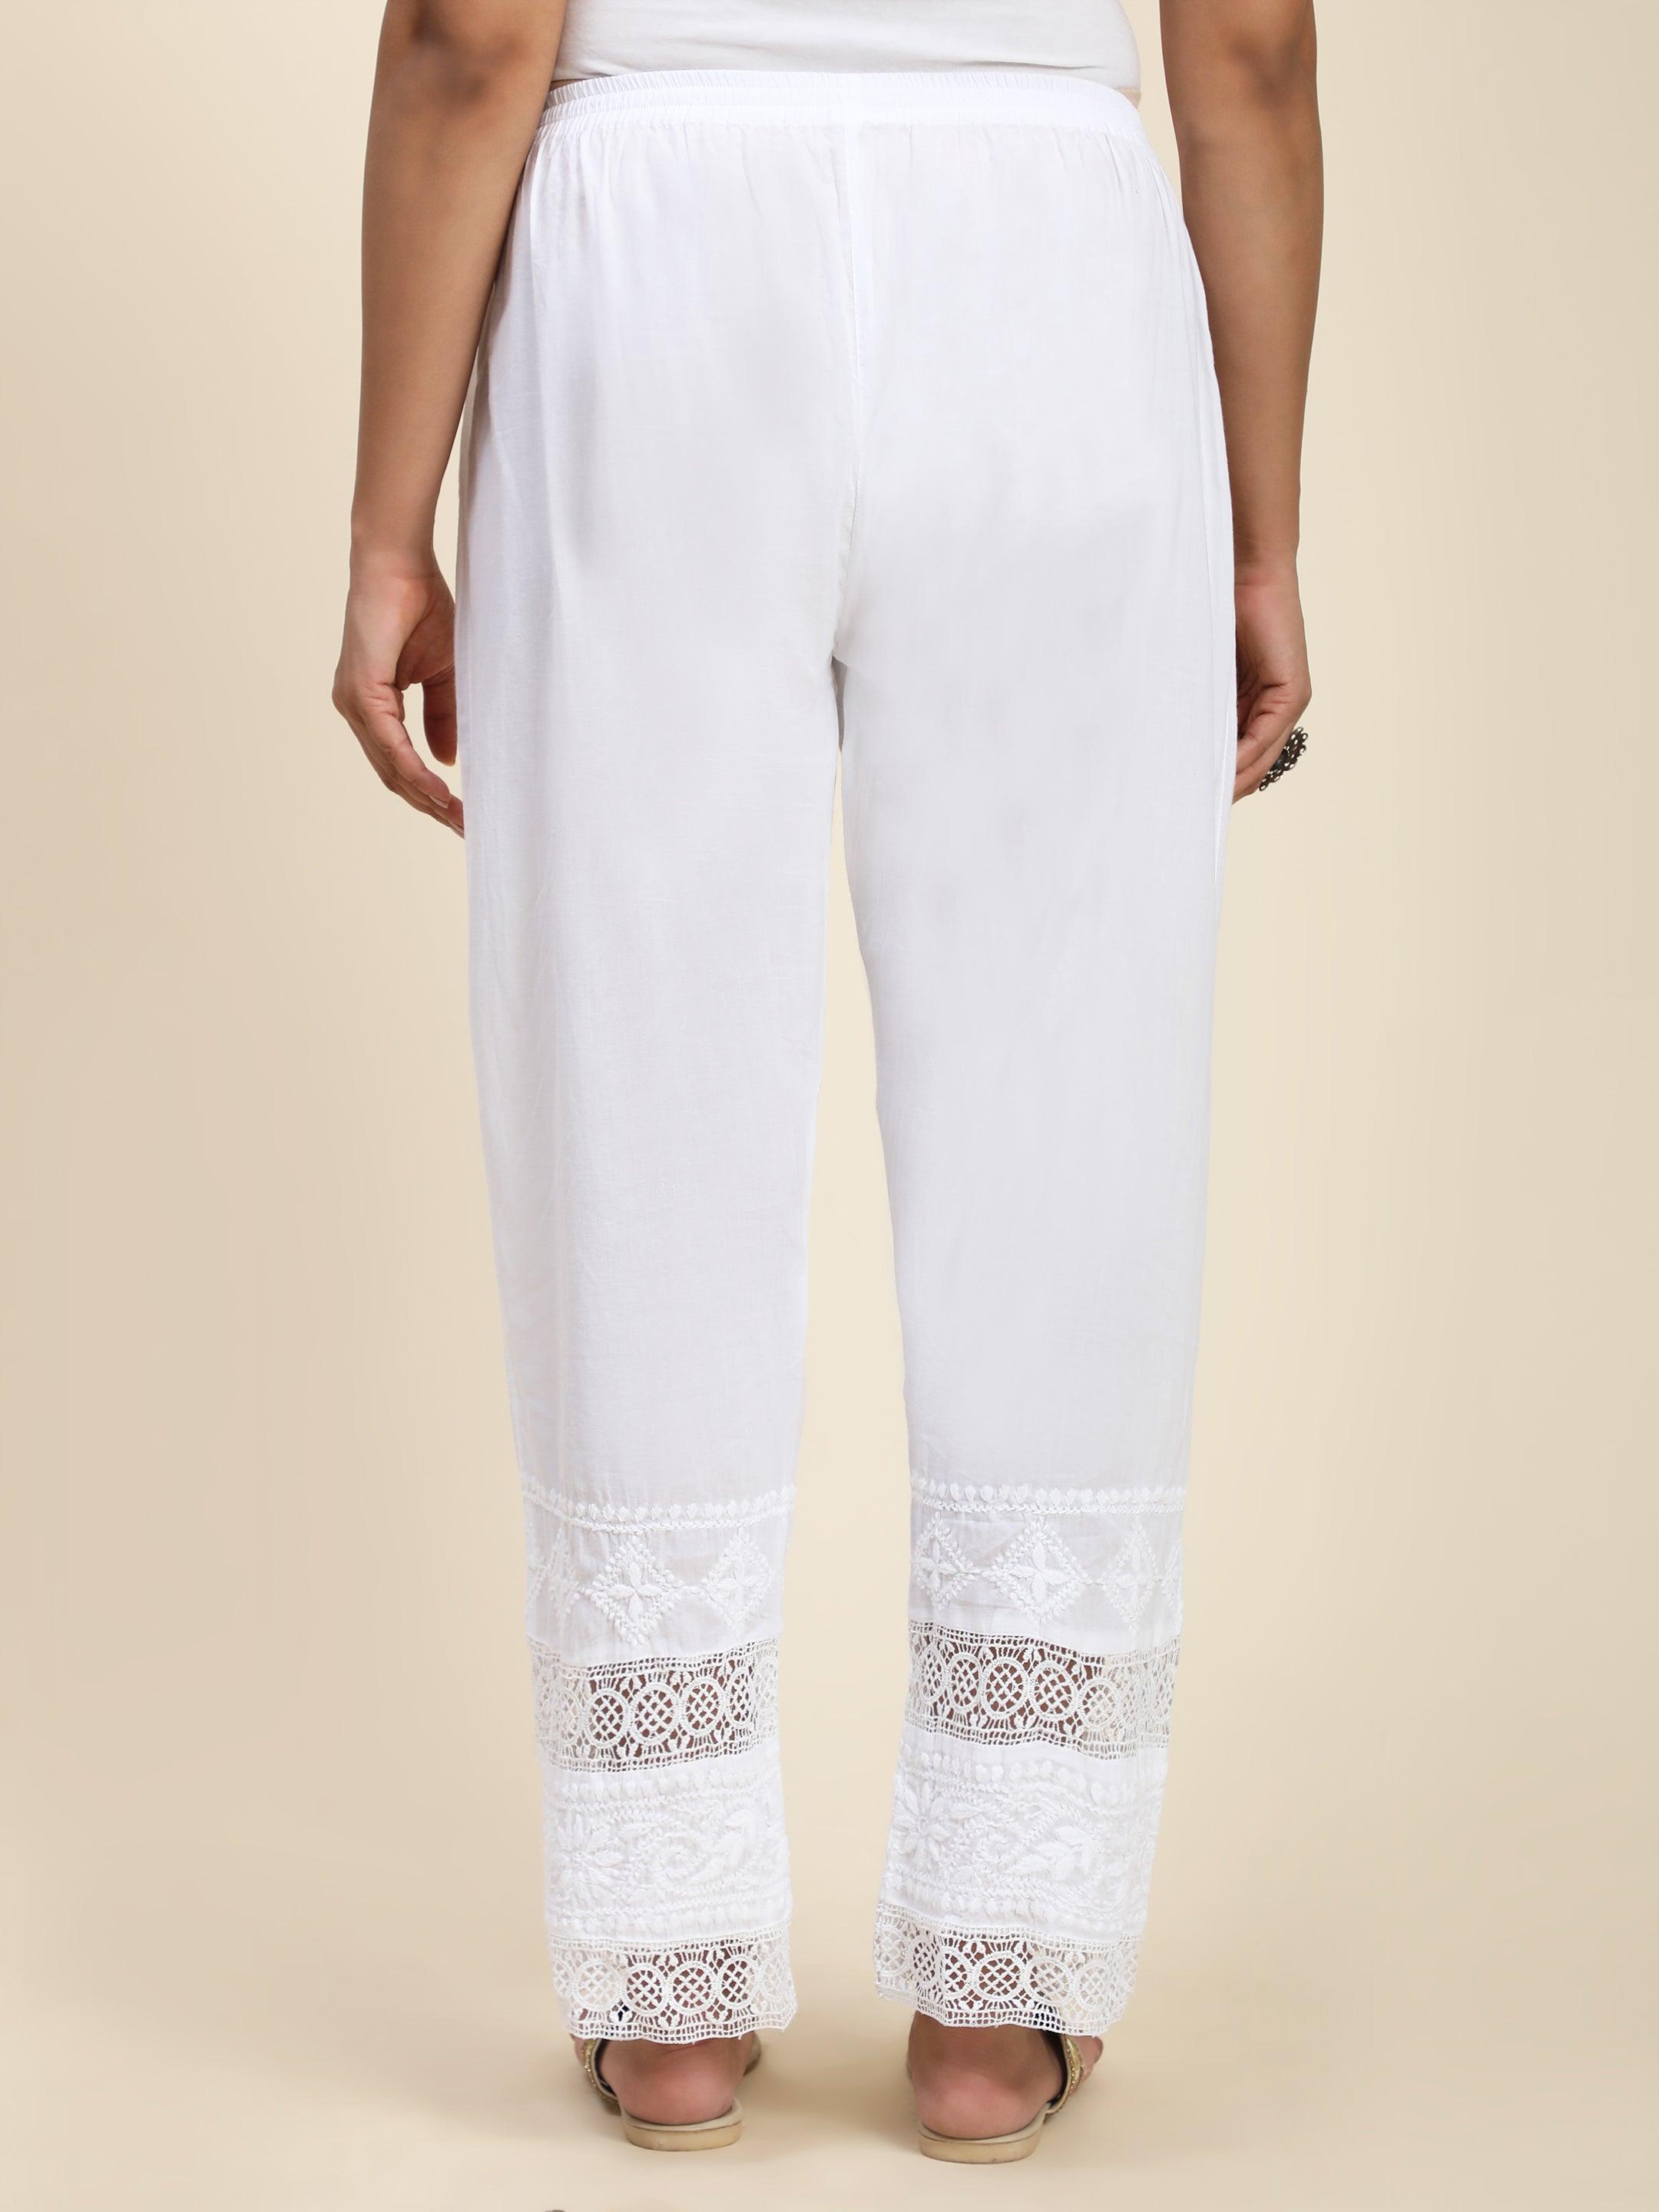 12 Best White lace pants ideas  lace pants white lace pants fashion